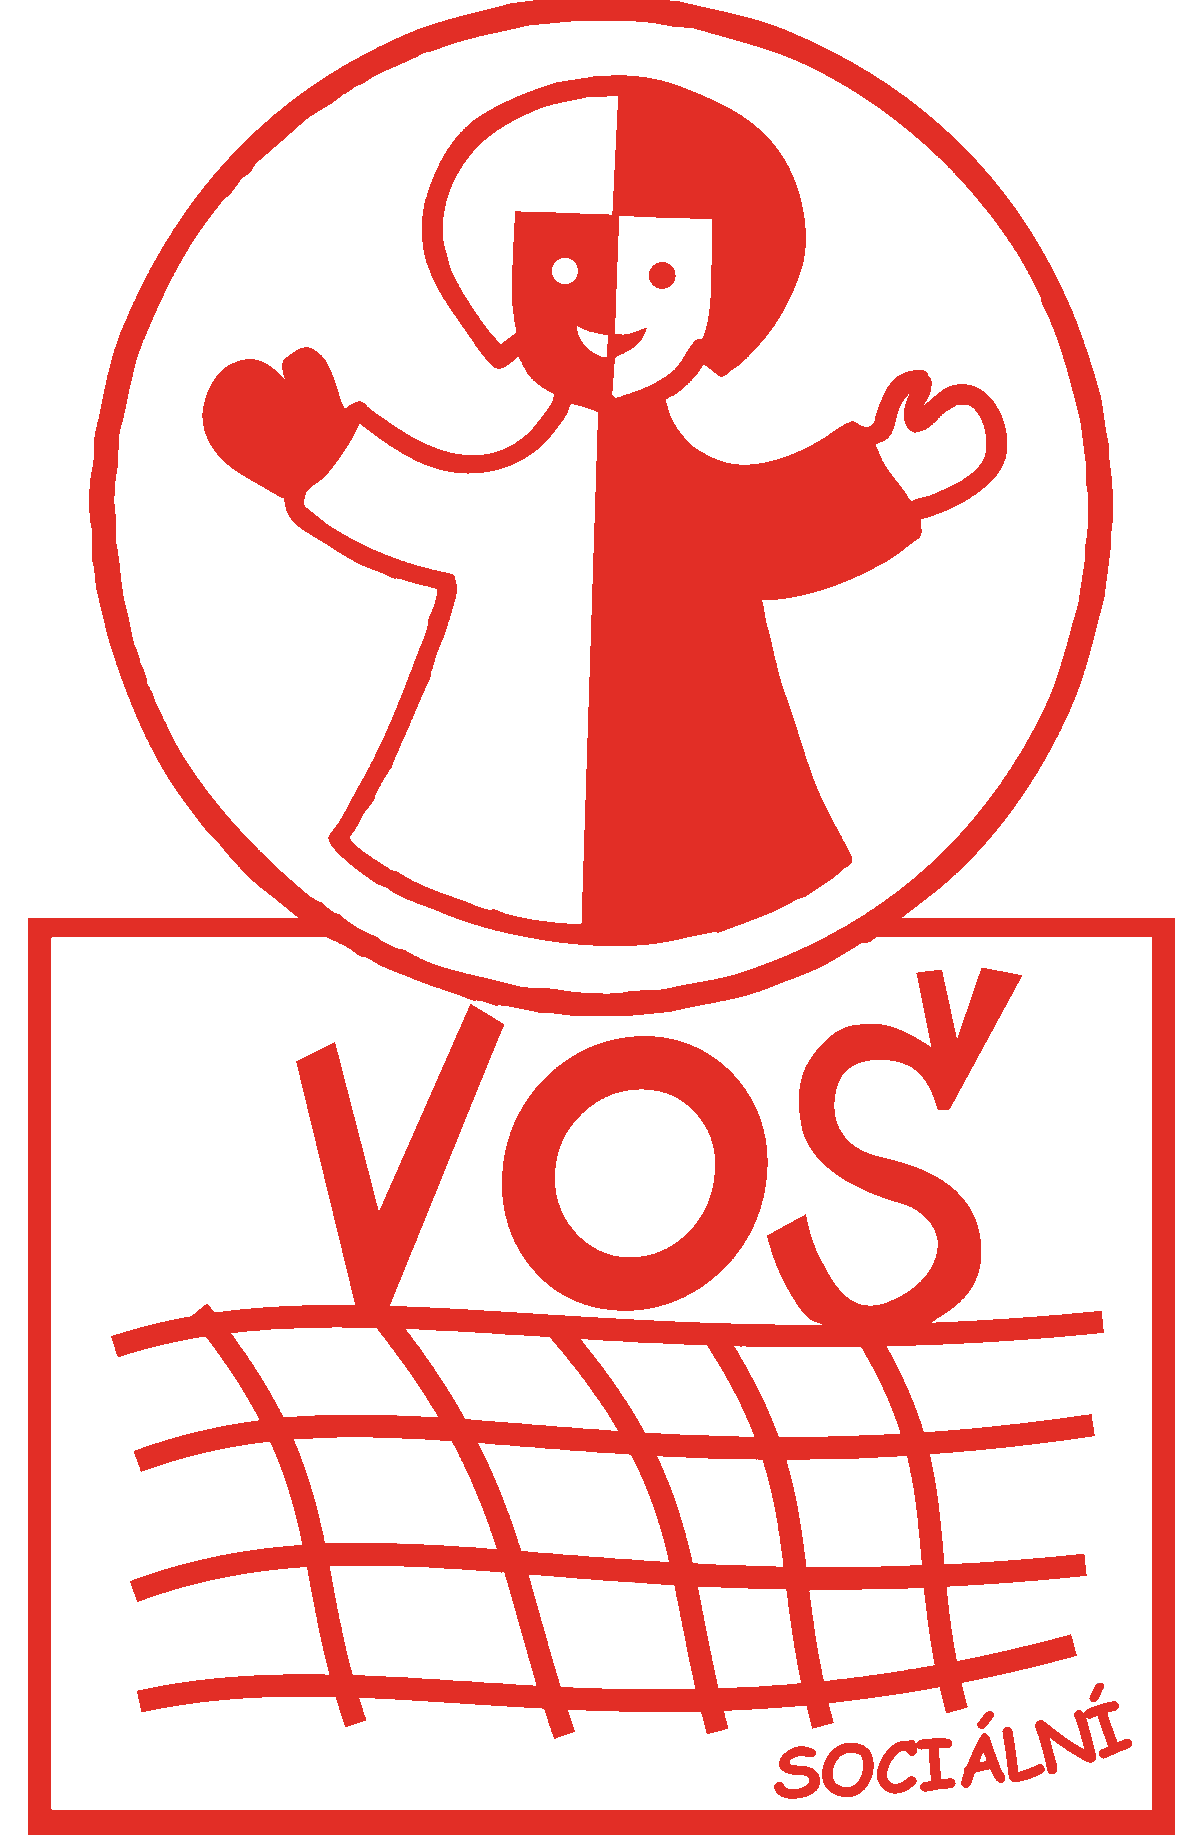 Školní logo